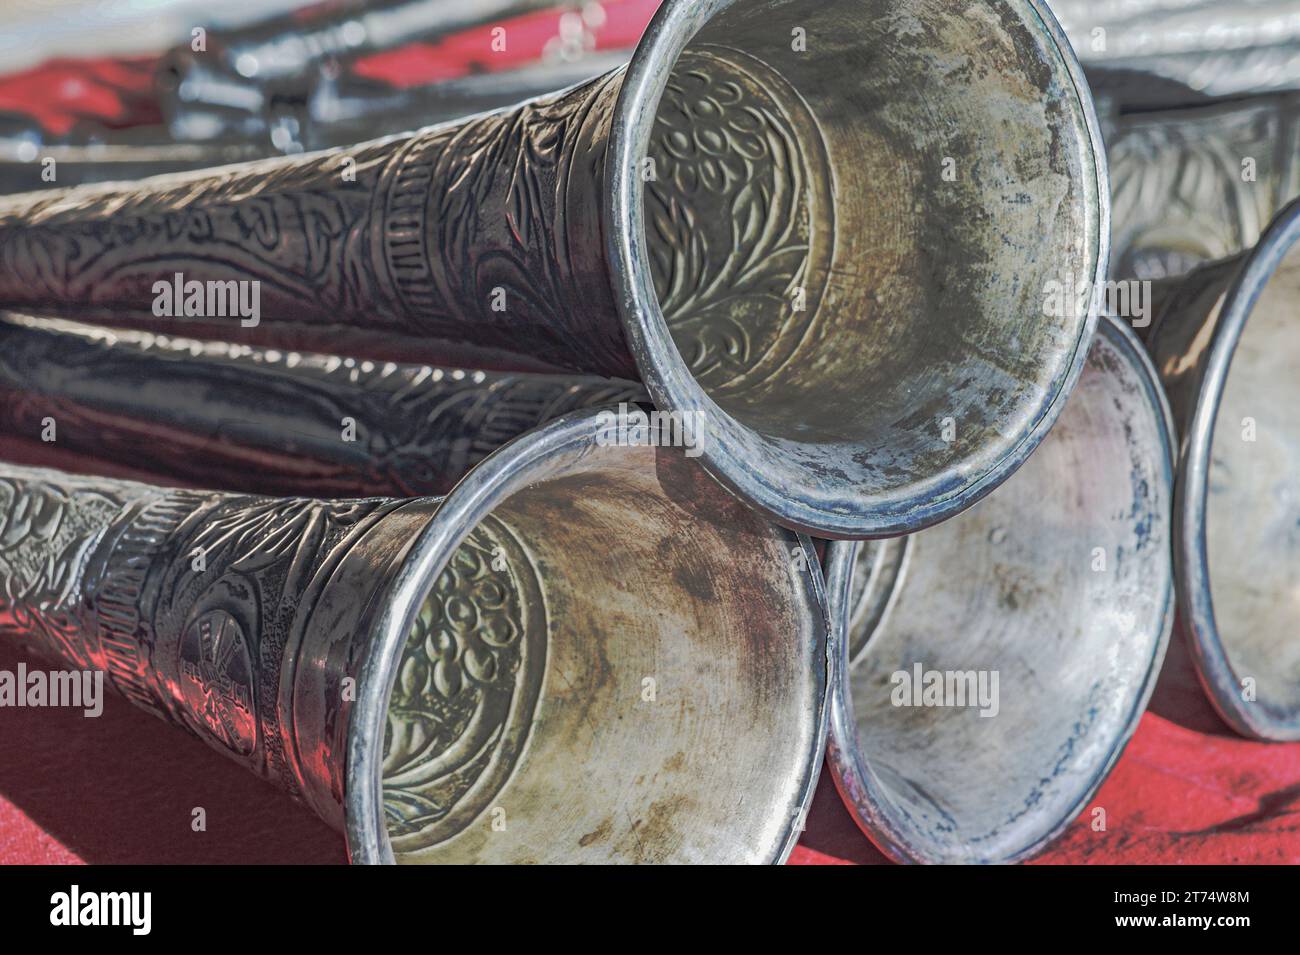 Trompeten-Hörner zeigen ein aufwändiges silberfarbenes Design, ein Musikinstrument, das vor über 100 Jahren an Feuerwehrmann verliehen wurde. Stockfoto